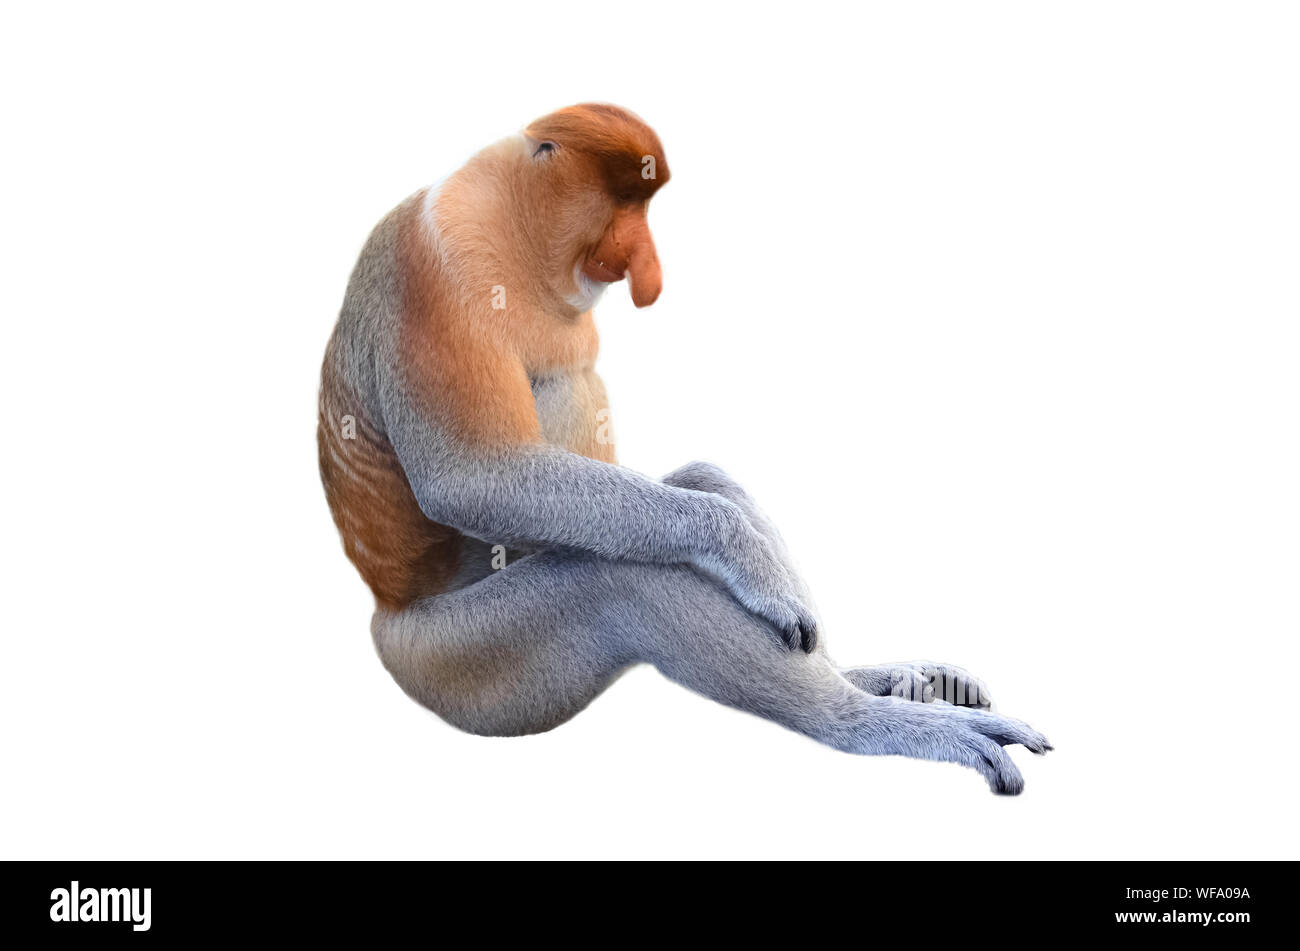 Monkey Sitting Against White Background Stock Photo - Alamy